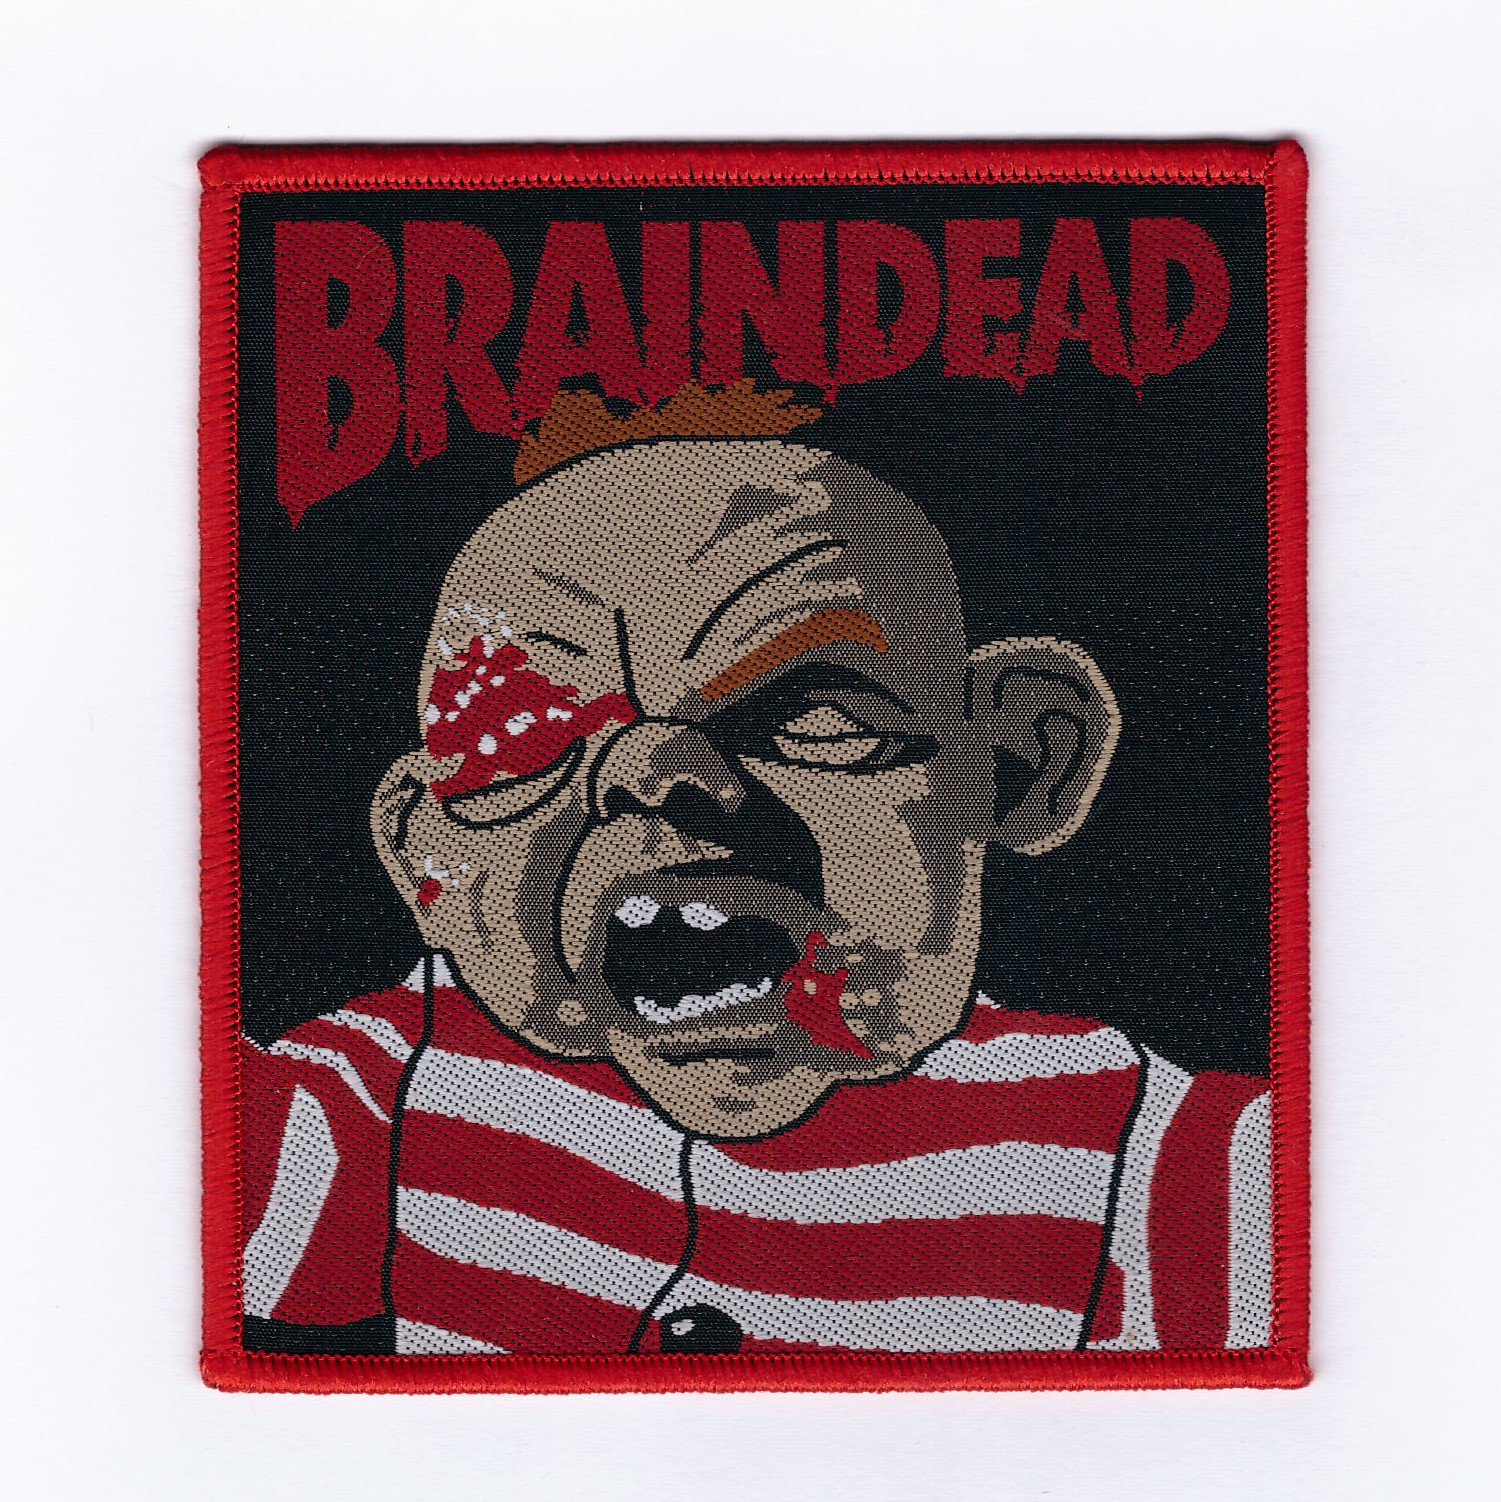 Braindead (Peter Jackson Horror Movie)